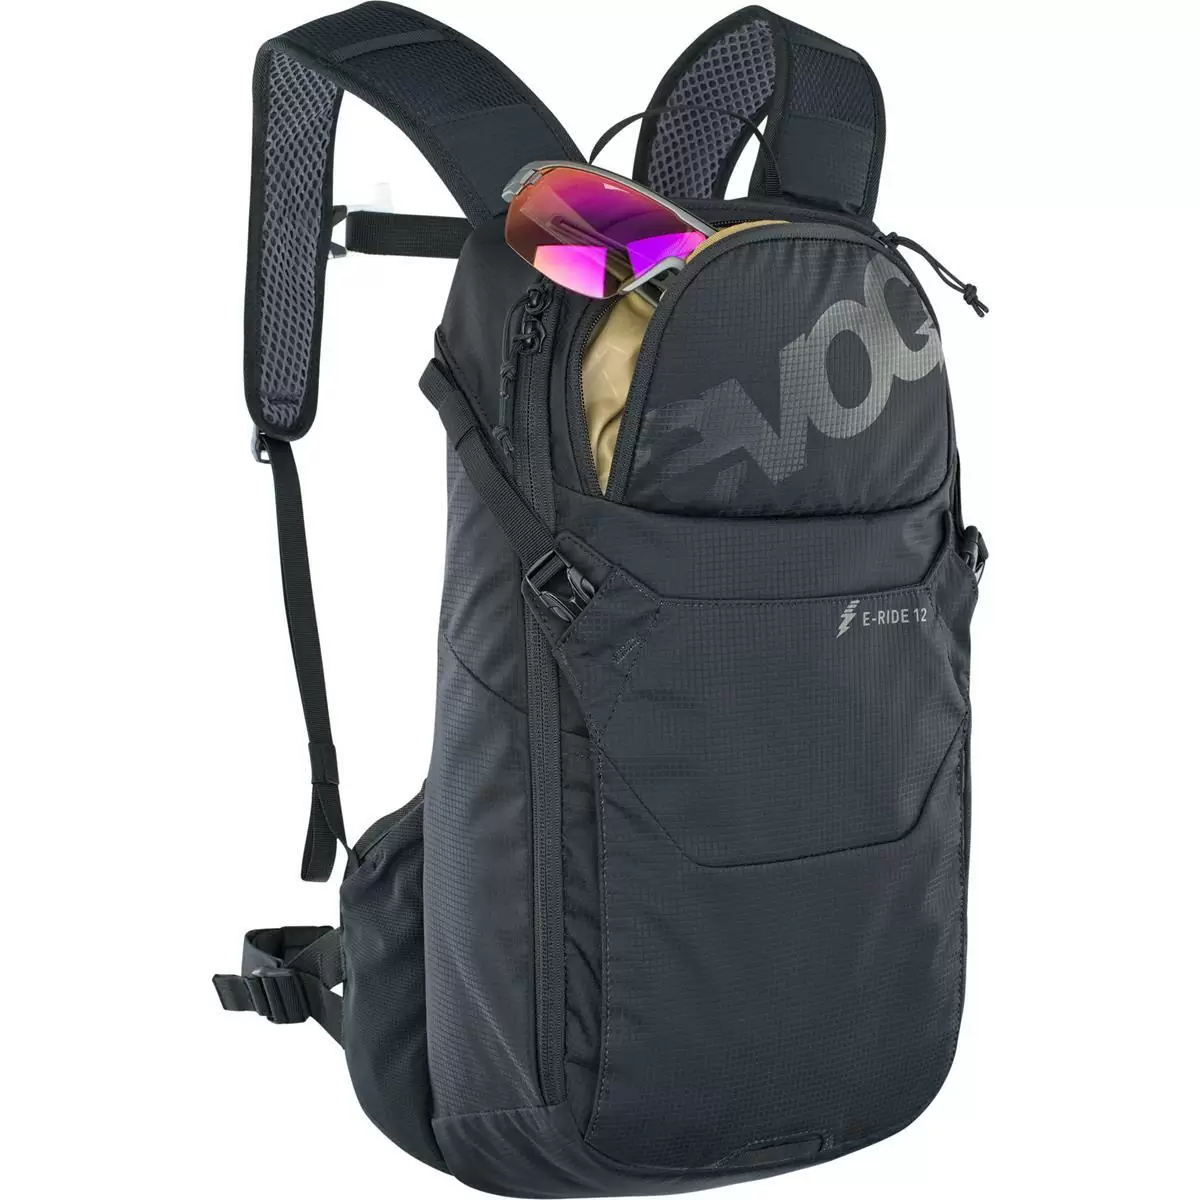 EVOC Ride, una mochila para el MTB y para el día a día